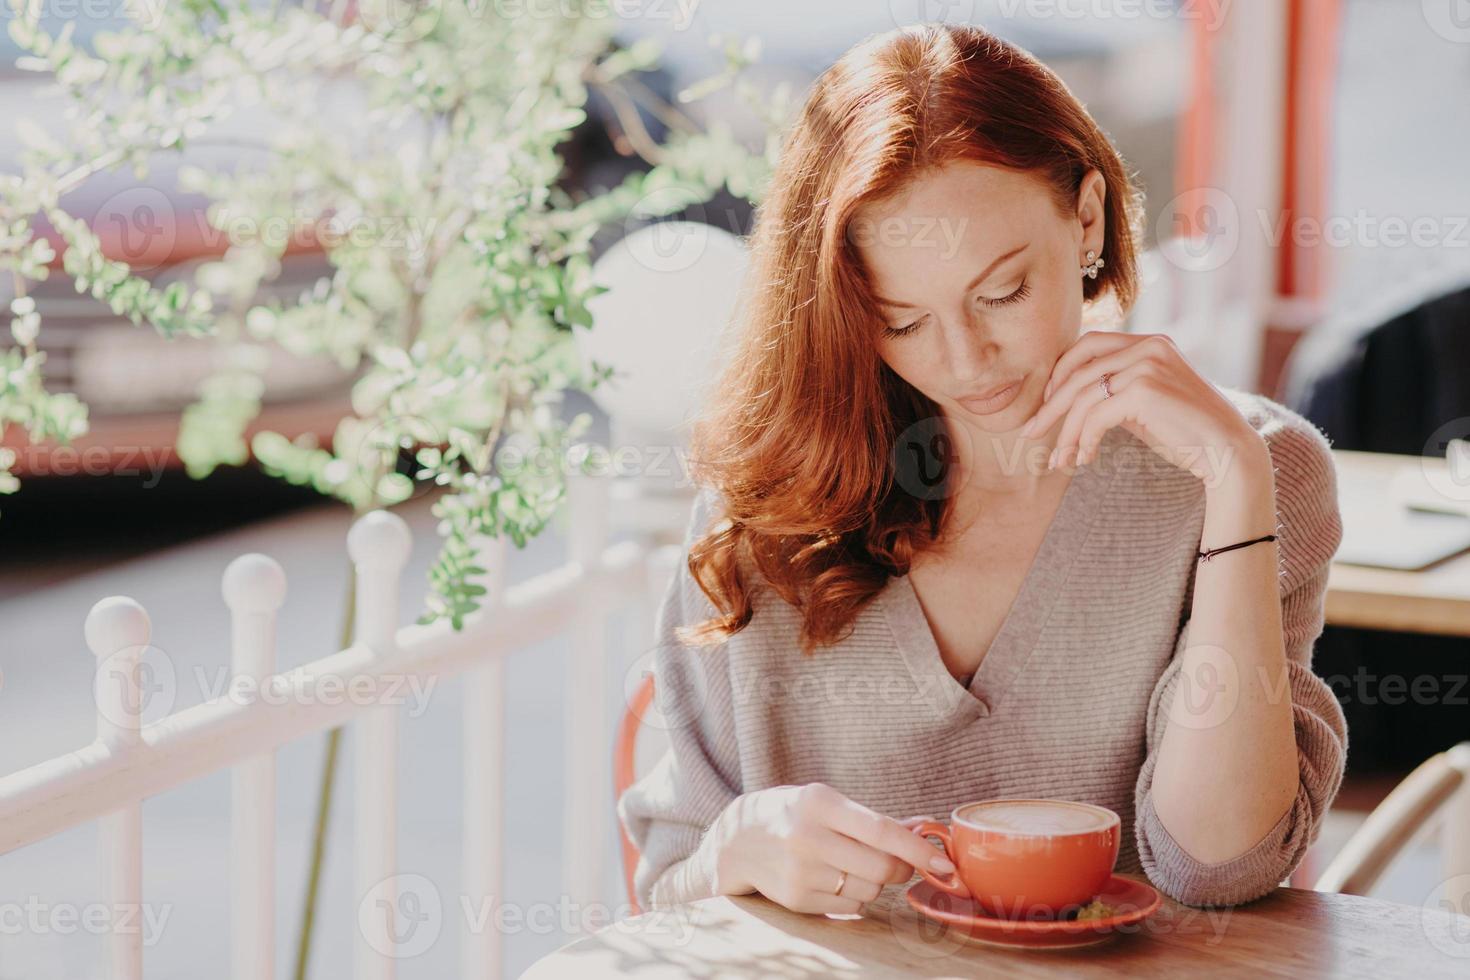 charmante roodharige europese vrouw drinkt cappuccino of koffie op terrascafé, heeft een rustige gezichtsuitdrukking, draagt een bruine trui, heeft make-up, geniet van een lekker drankje. mensen en levensstijl concept. foto